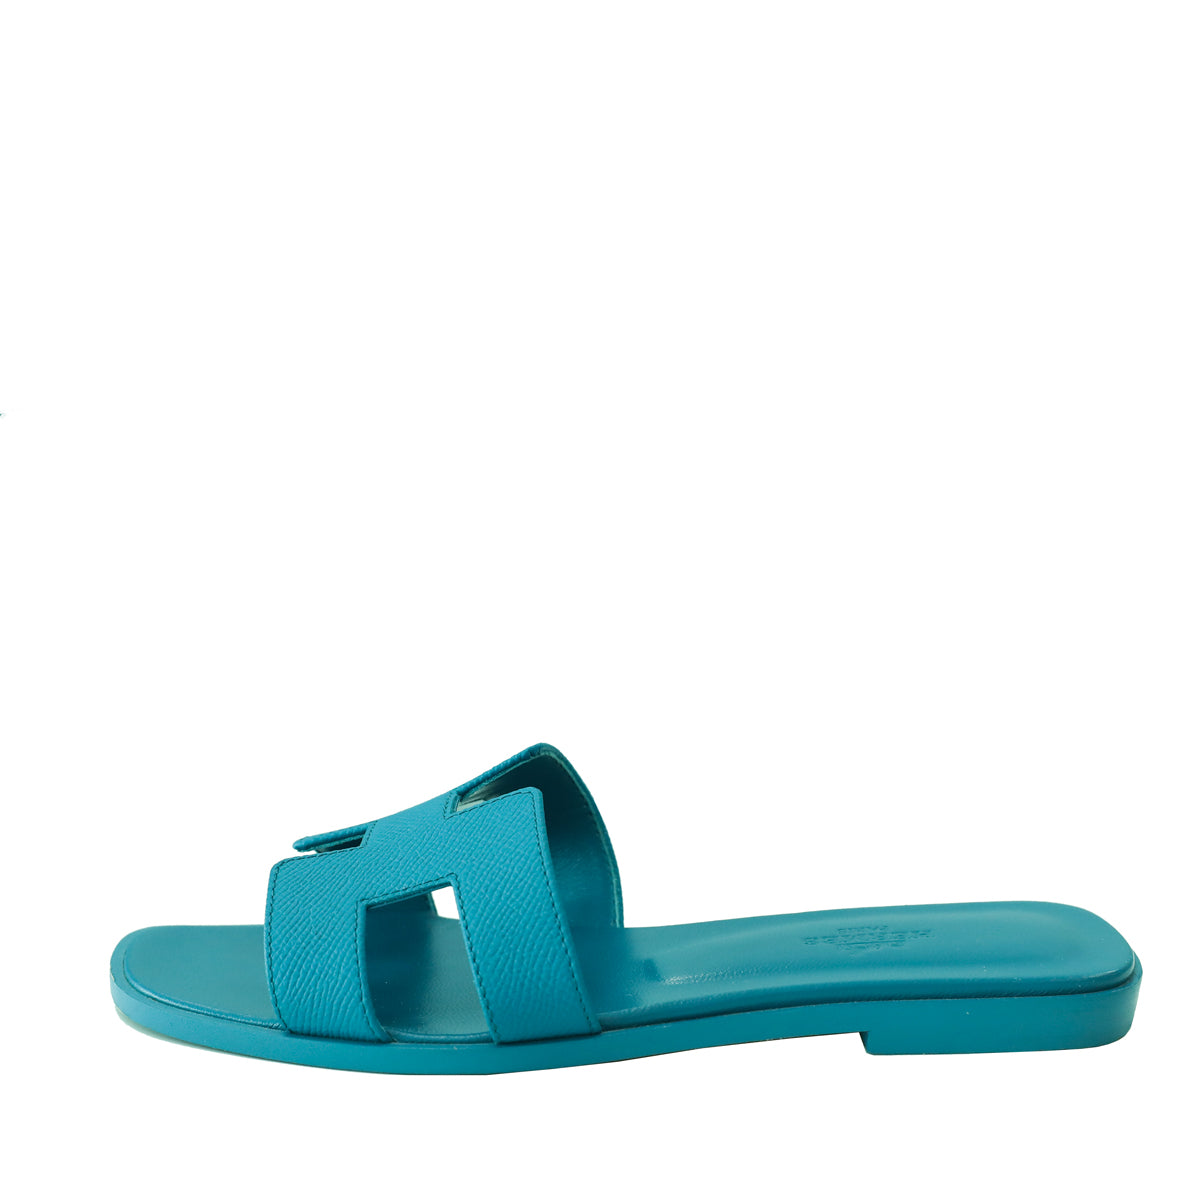 Hermes Navy Blue Epsom Oasis Sandal 36.5 – The Closet